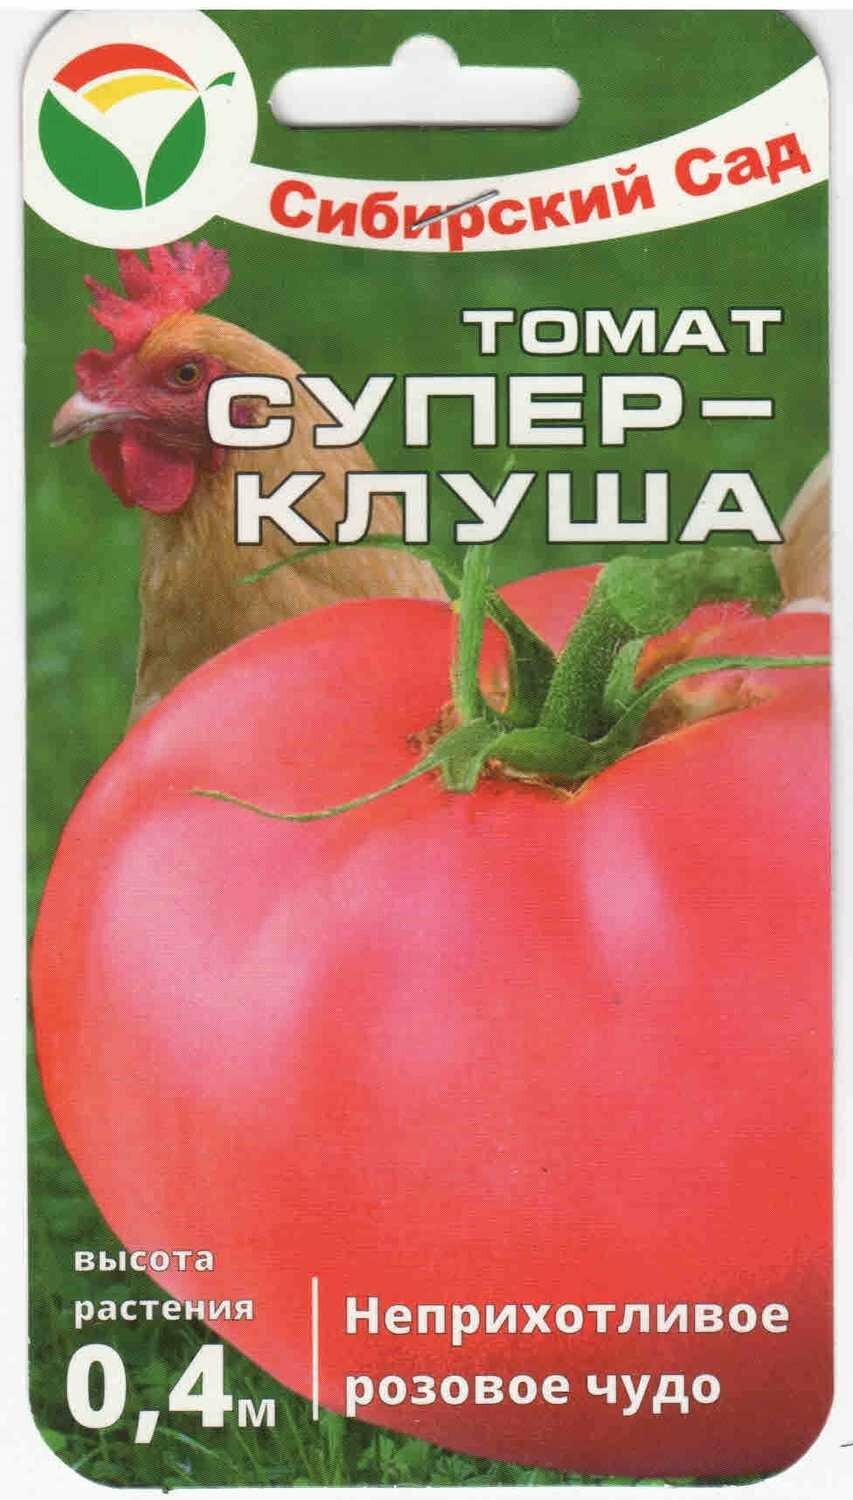 Суперклуша 20шт томат (Сиб сад)